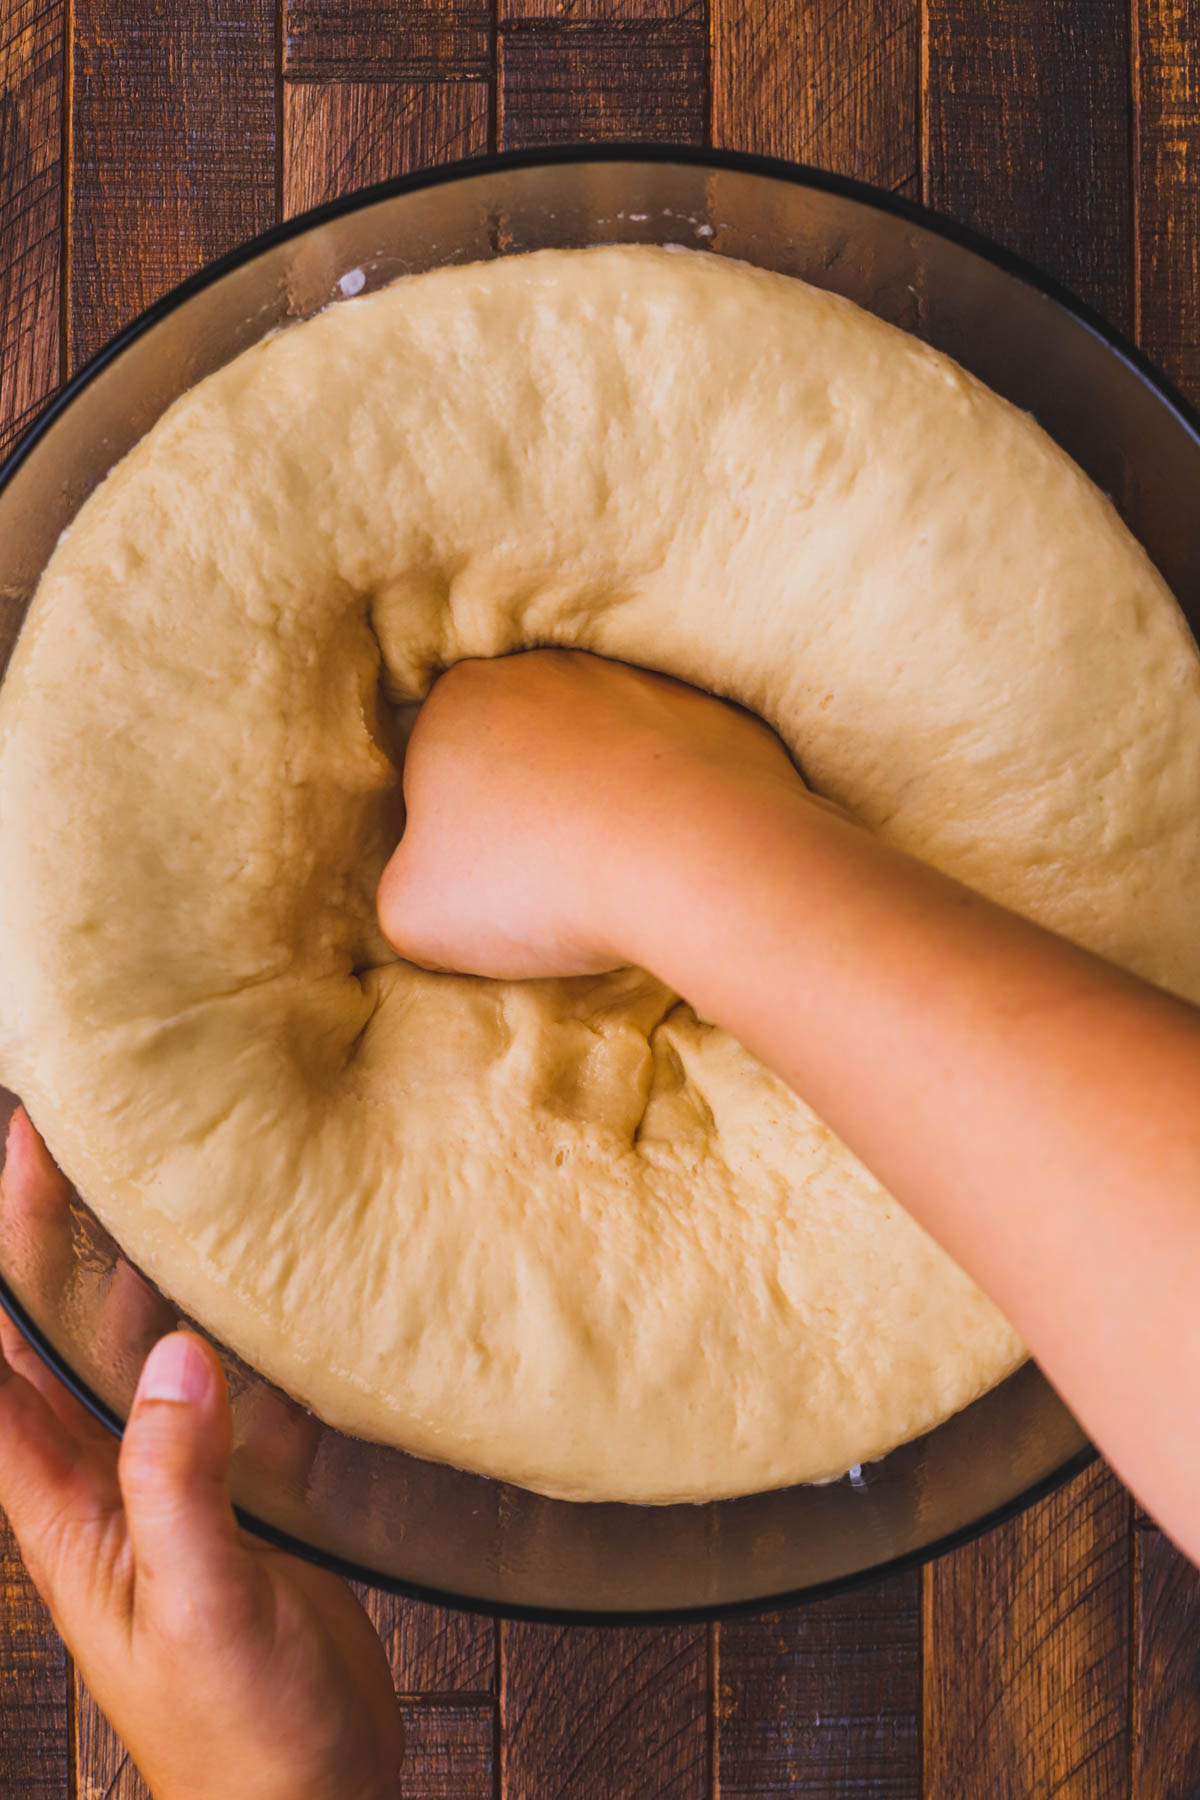 Deflated brioche dough